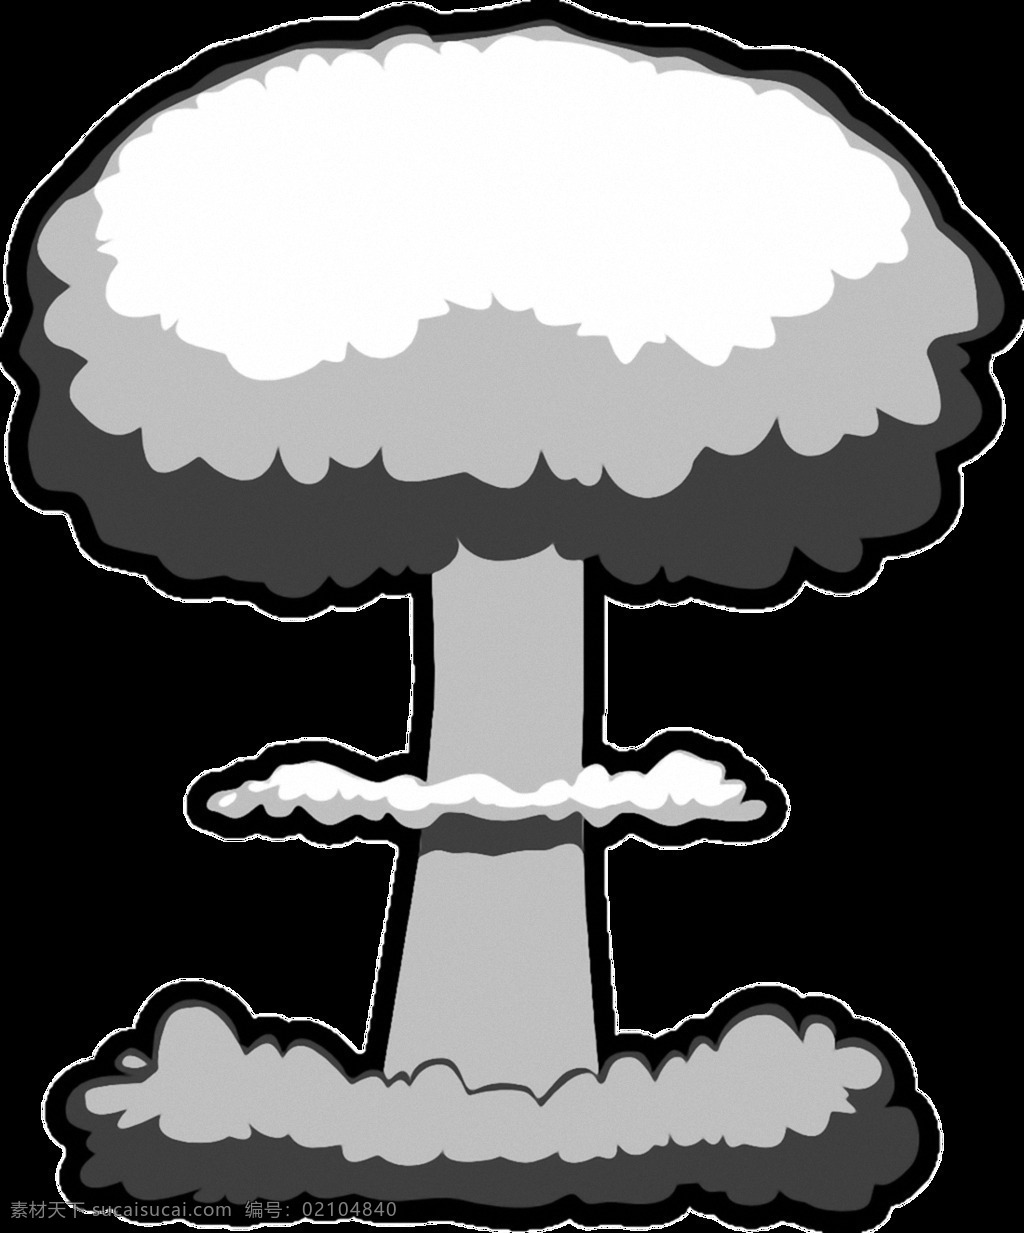 手绘 黑白 蘑菇云 免 抠 透明 黑白蘑菇云 爆炸 效果 爆炸效果海报